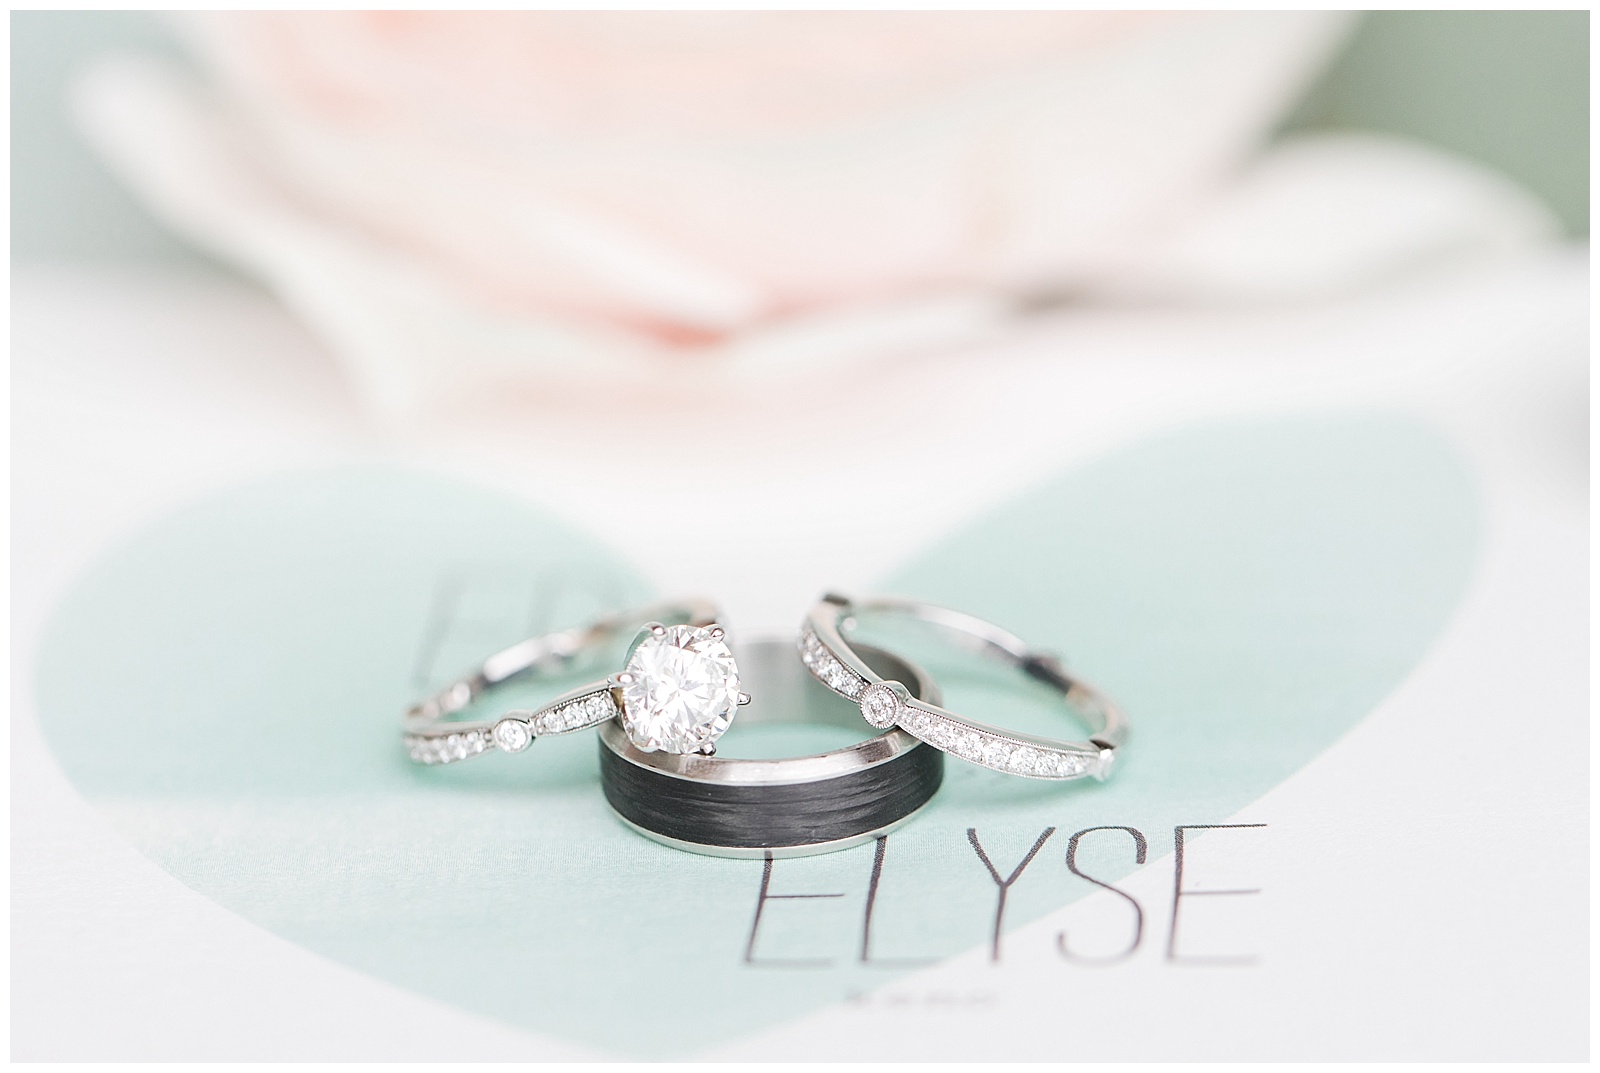 Ed + Elyse . Married